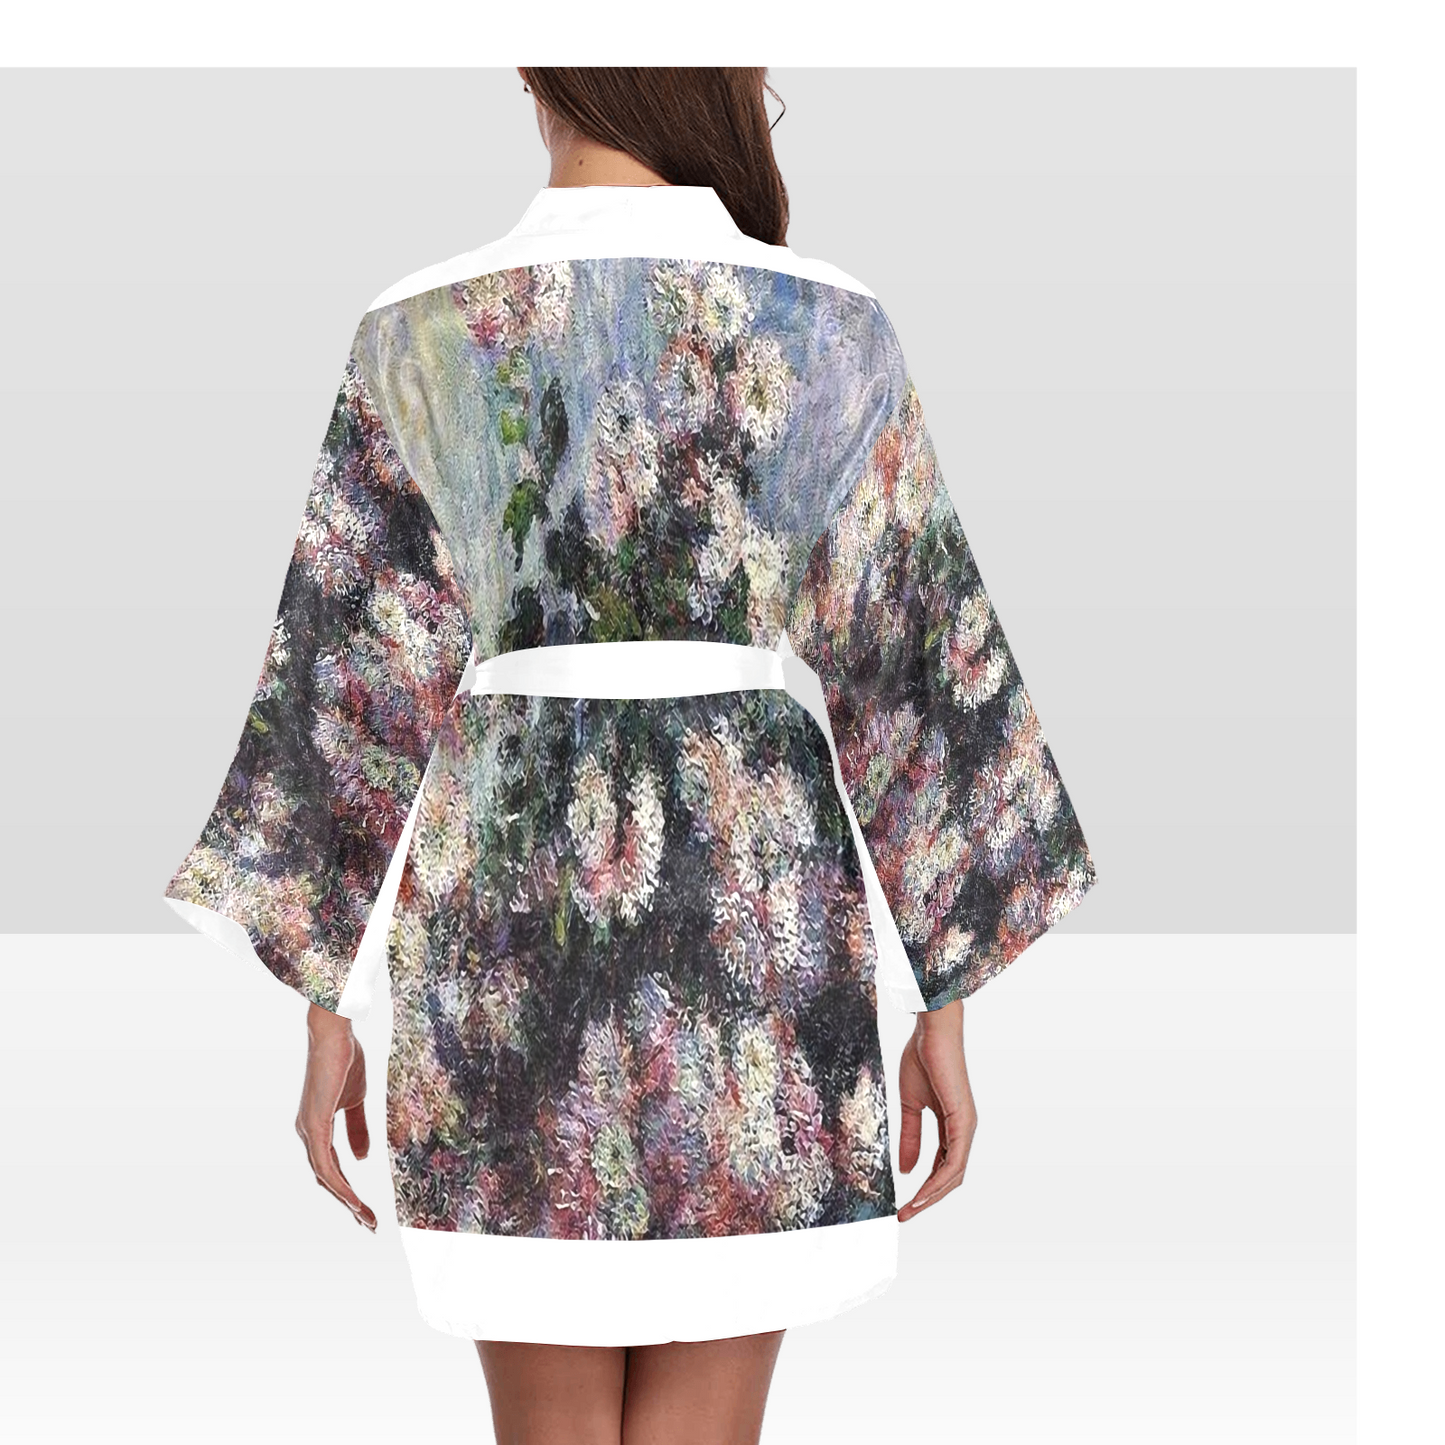 Vintage Floral Kimono Robe, Black or White Trim, Sizes XS to 2XL, Design 44